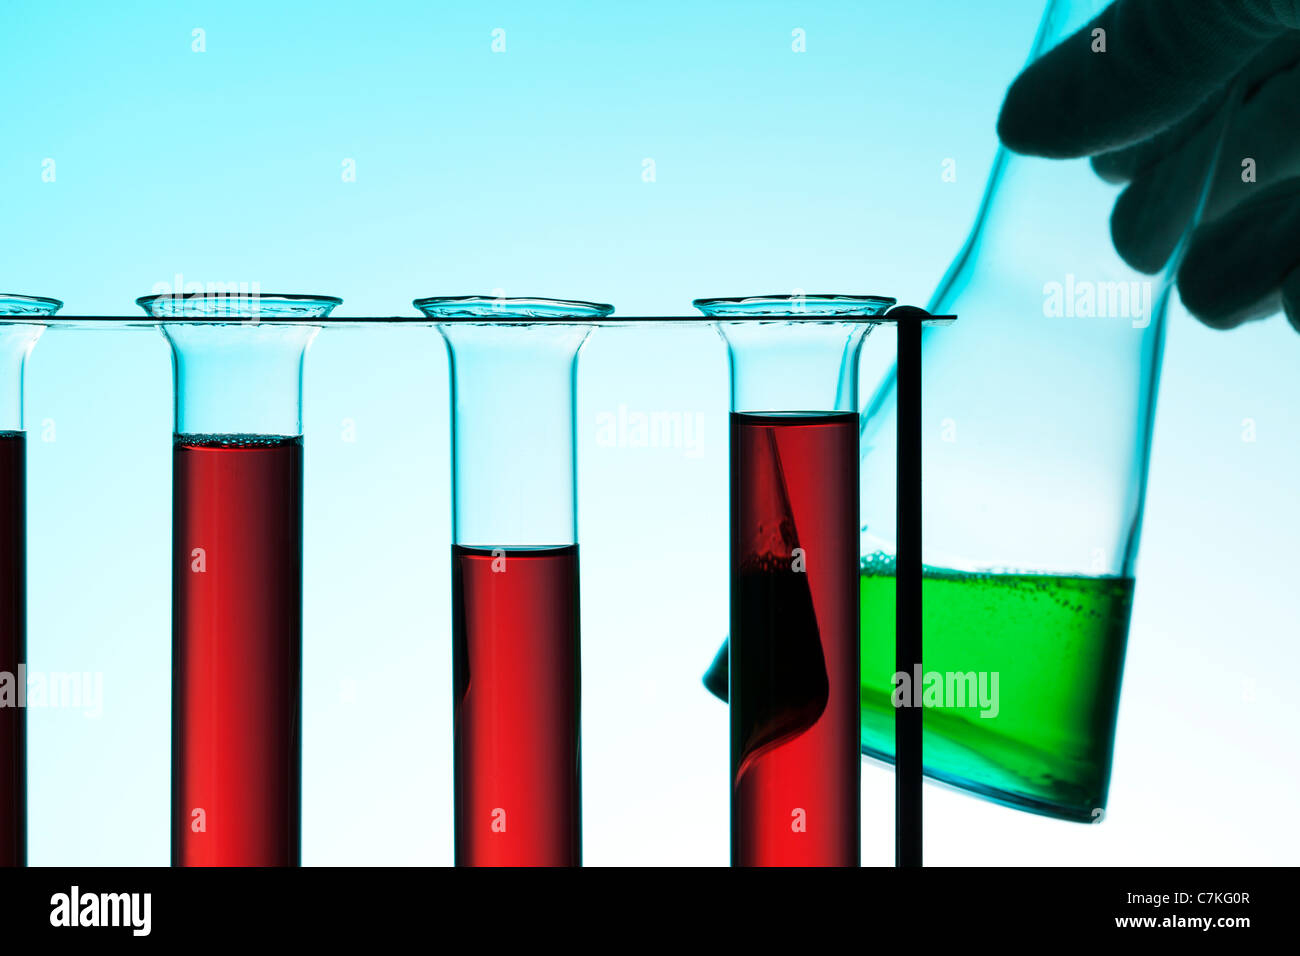 Scène laboratoire chimique, tubes à essai en rack avec un liquide rouge, hand holding Erlenmeyer contenant un liquide vert Banque D'Images